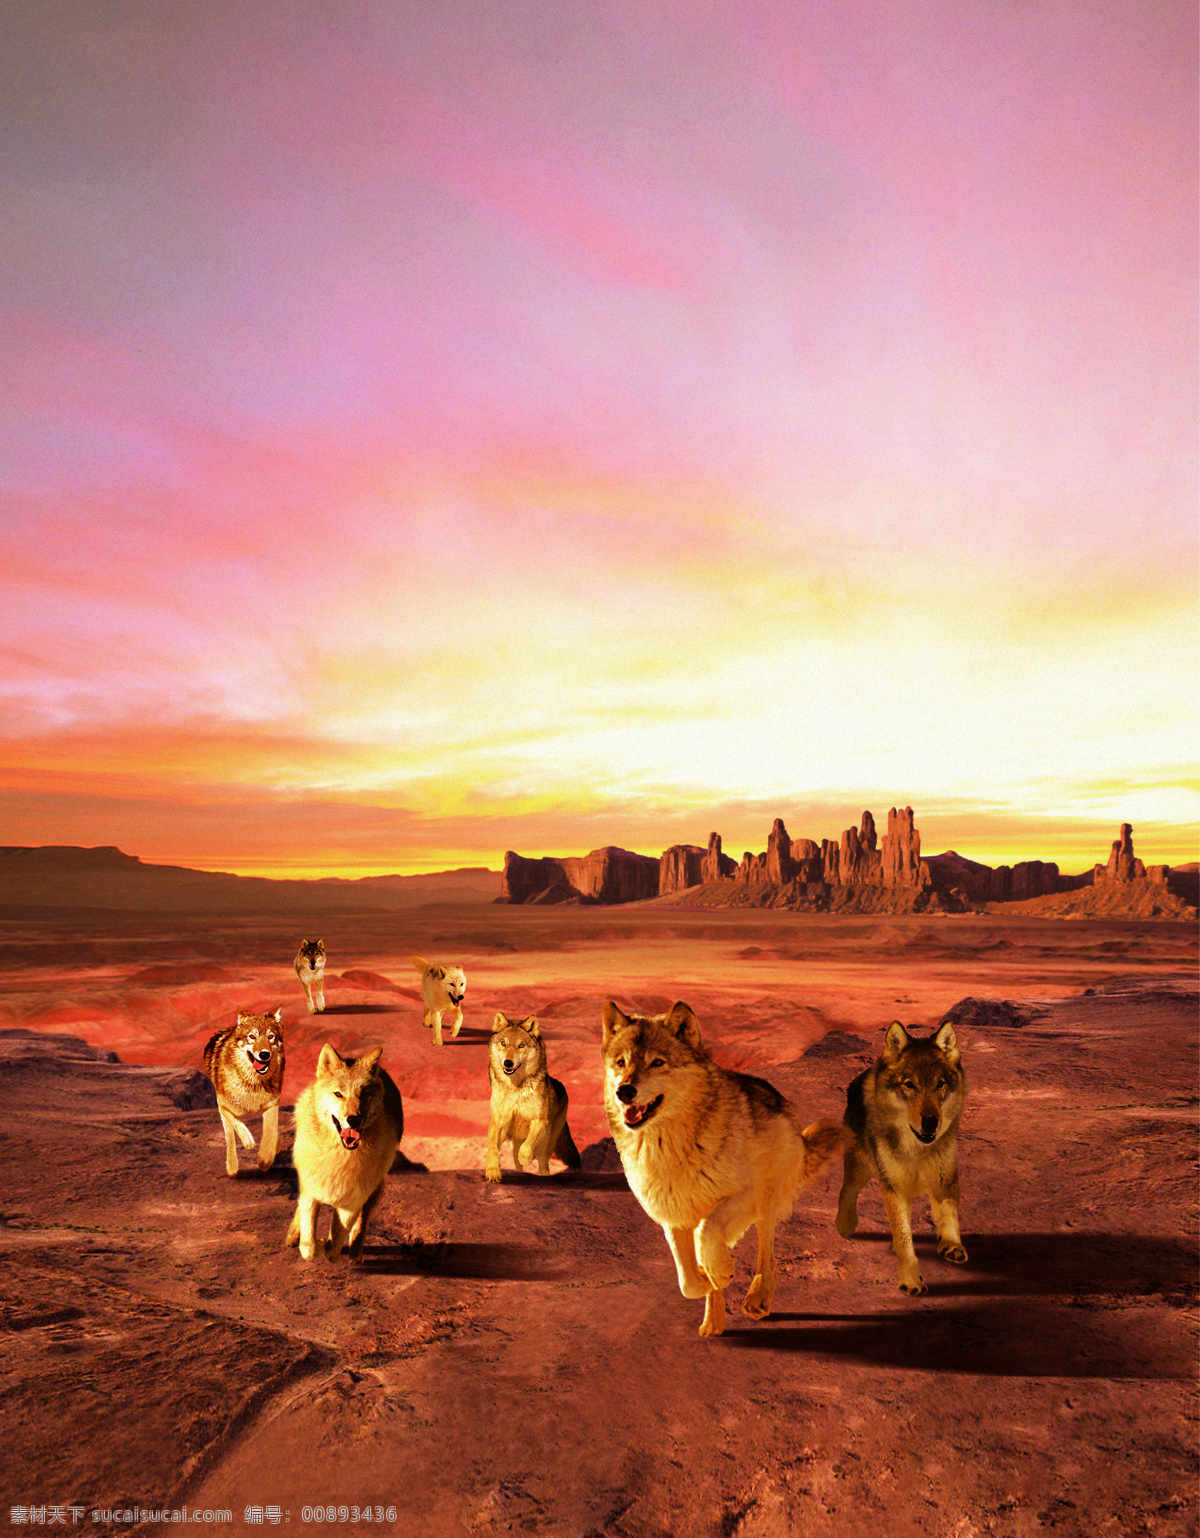 黄昏 七匹狼 沙漠 生物世界 野生动物 沙漠狼 设计素材 模板下载 海报